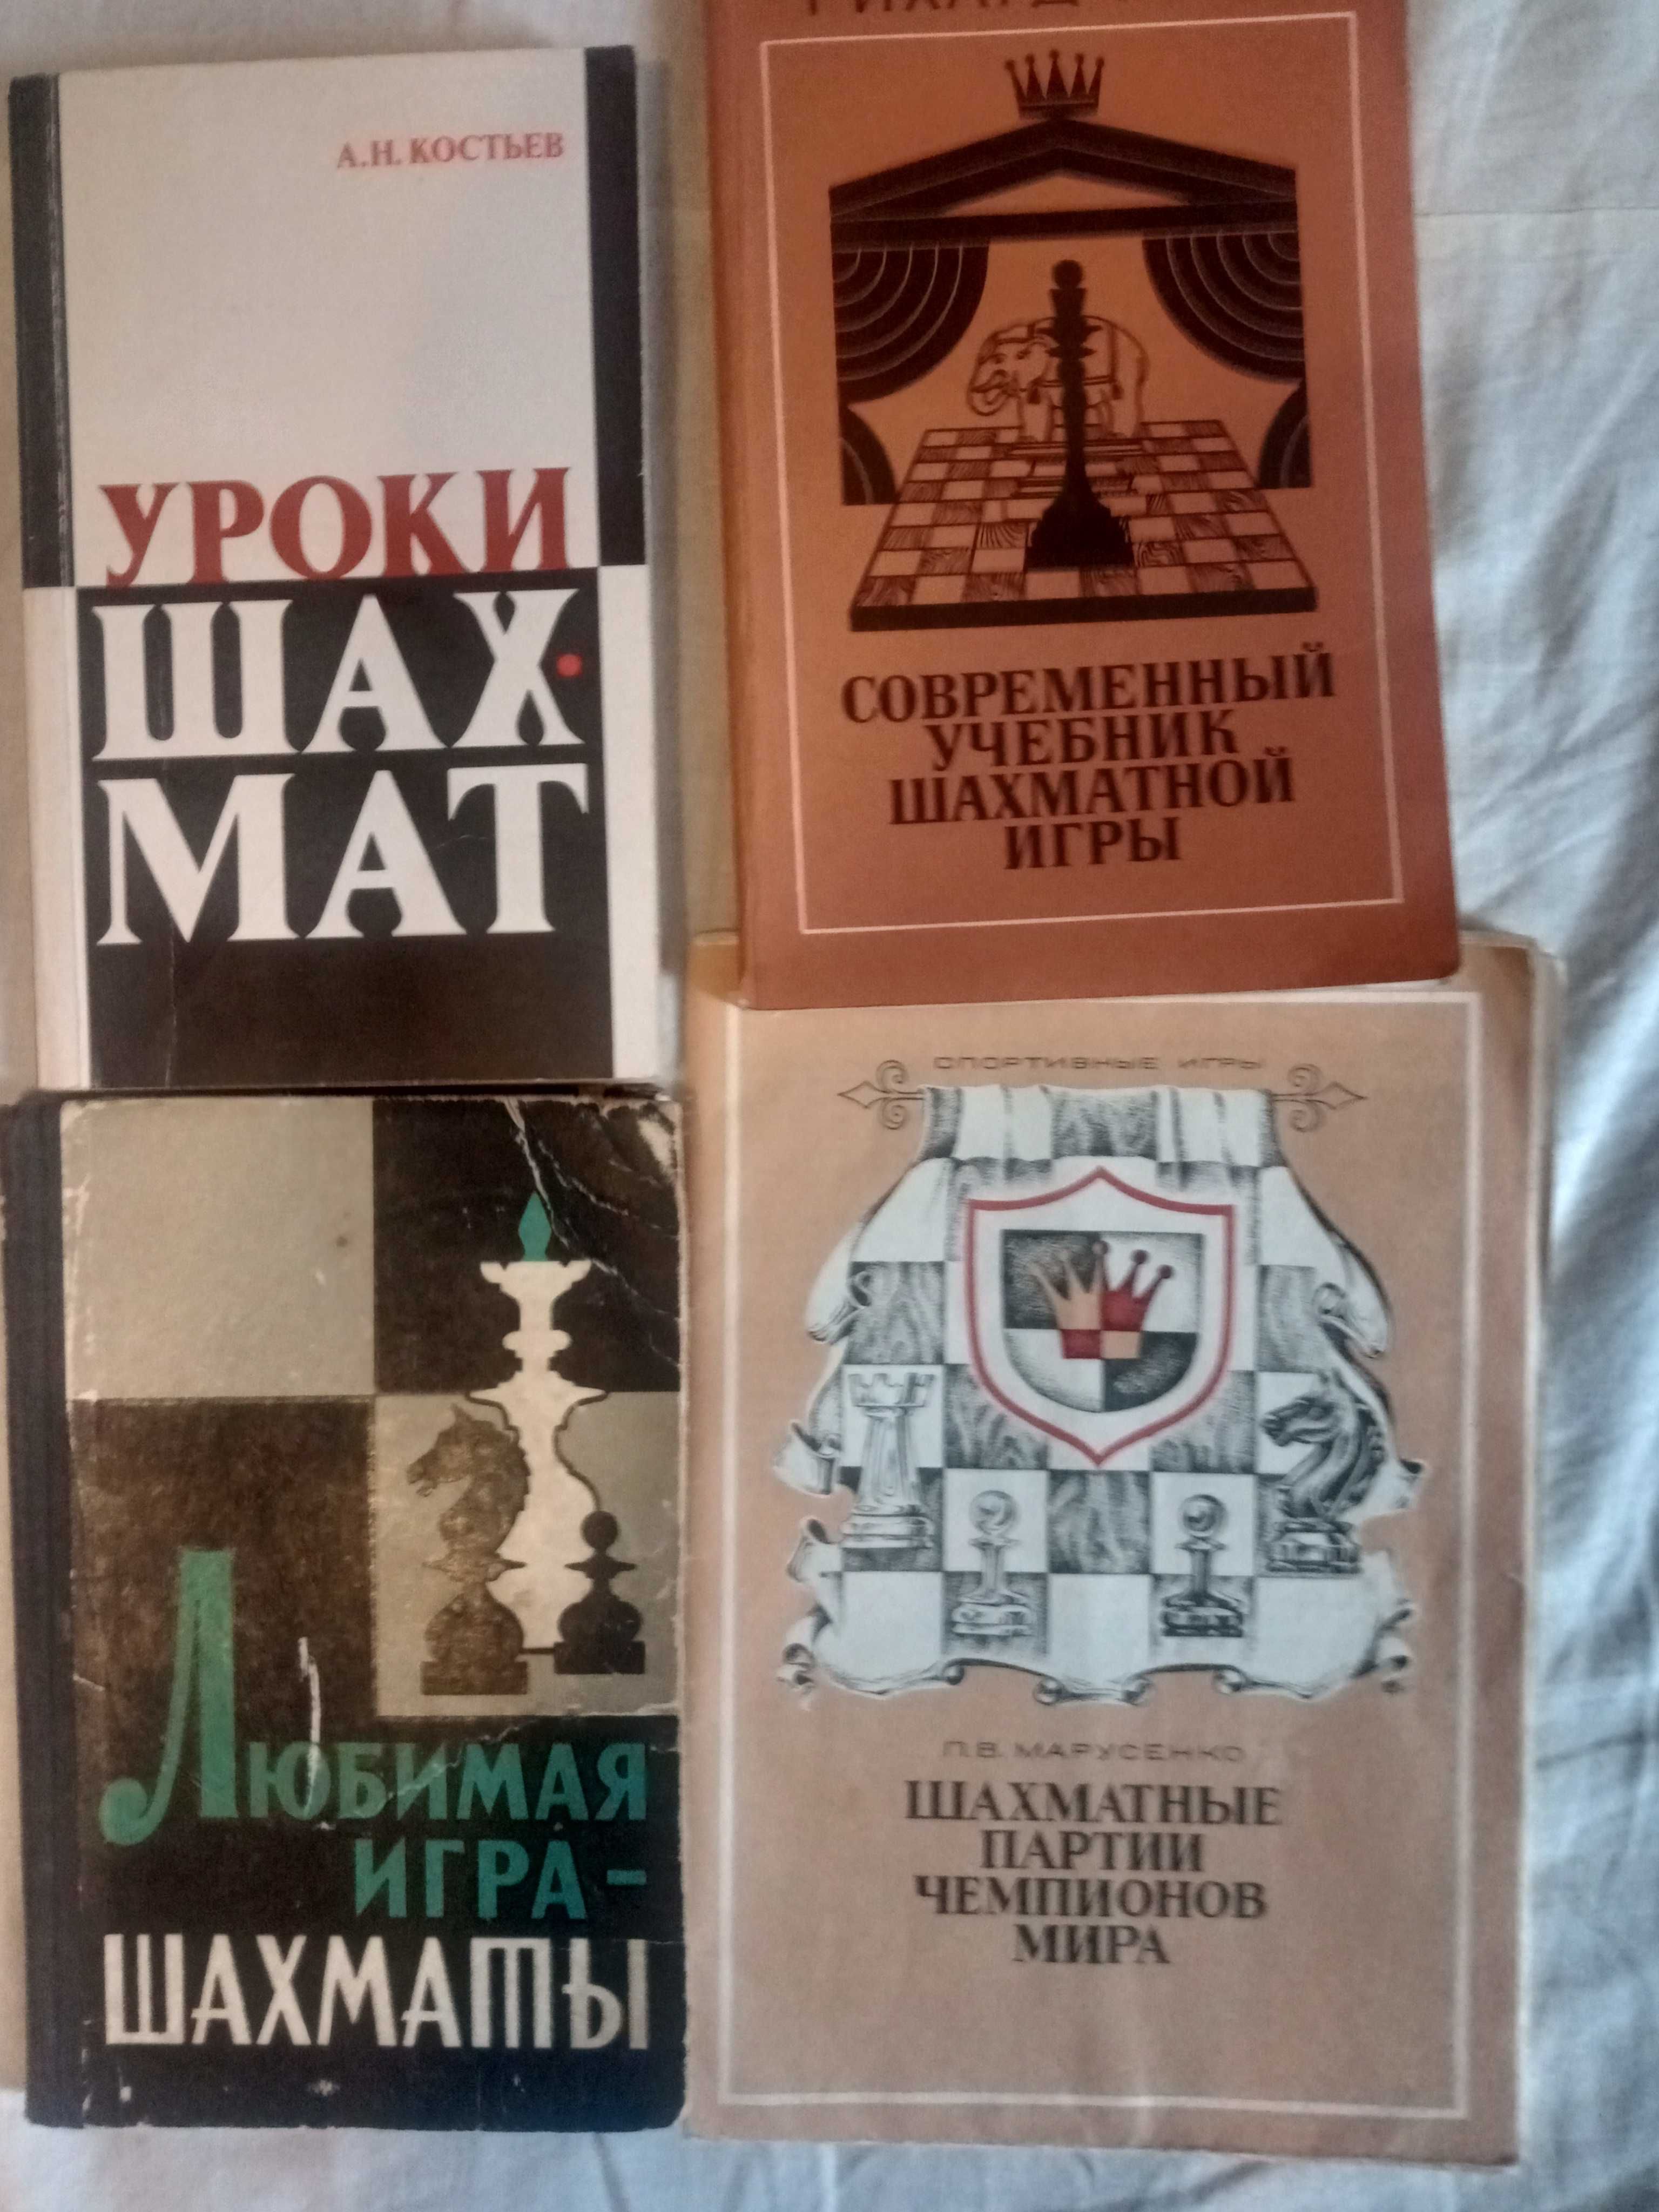 Учебники шахматной игры Ричард Рети и А.Н.Костьев.